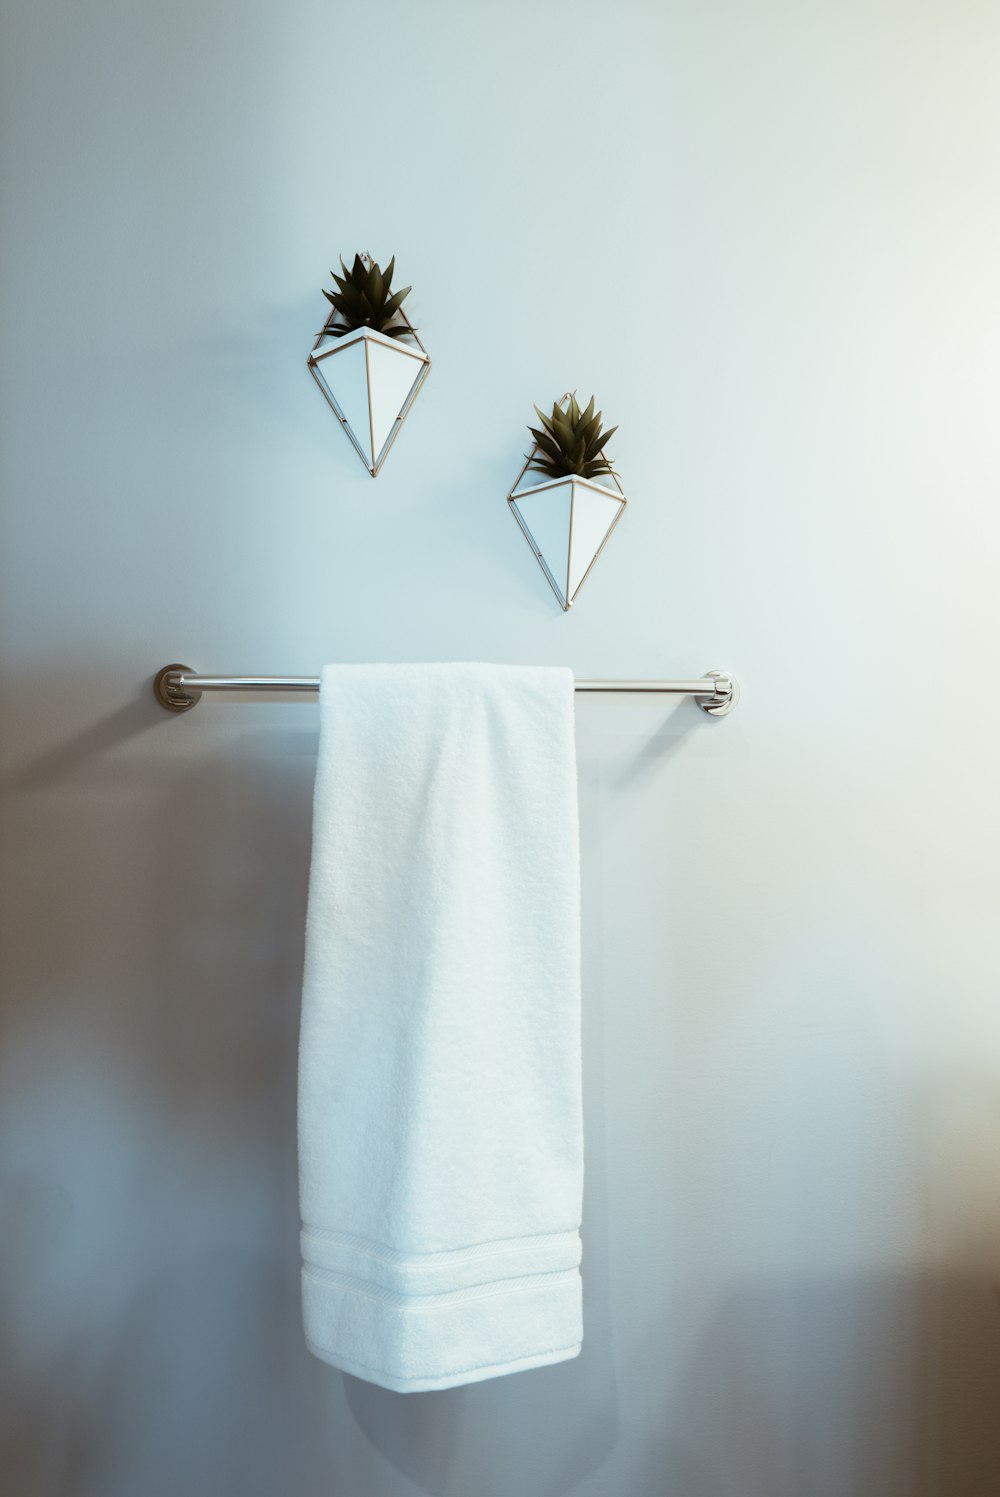 white towel on stainless steel towel rack